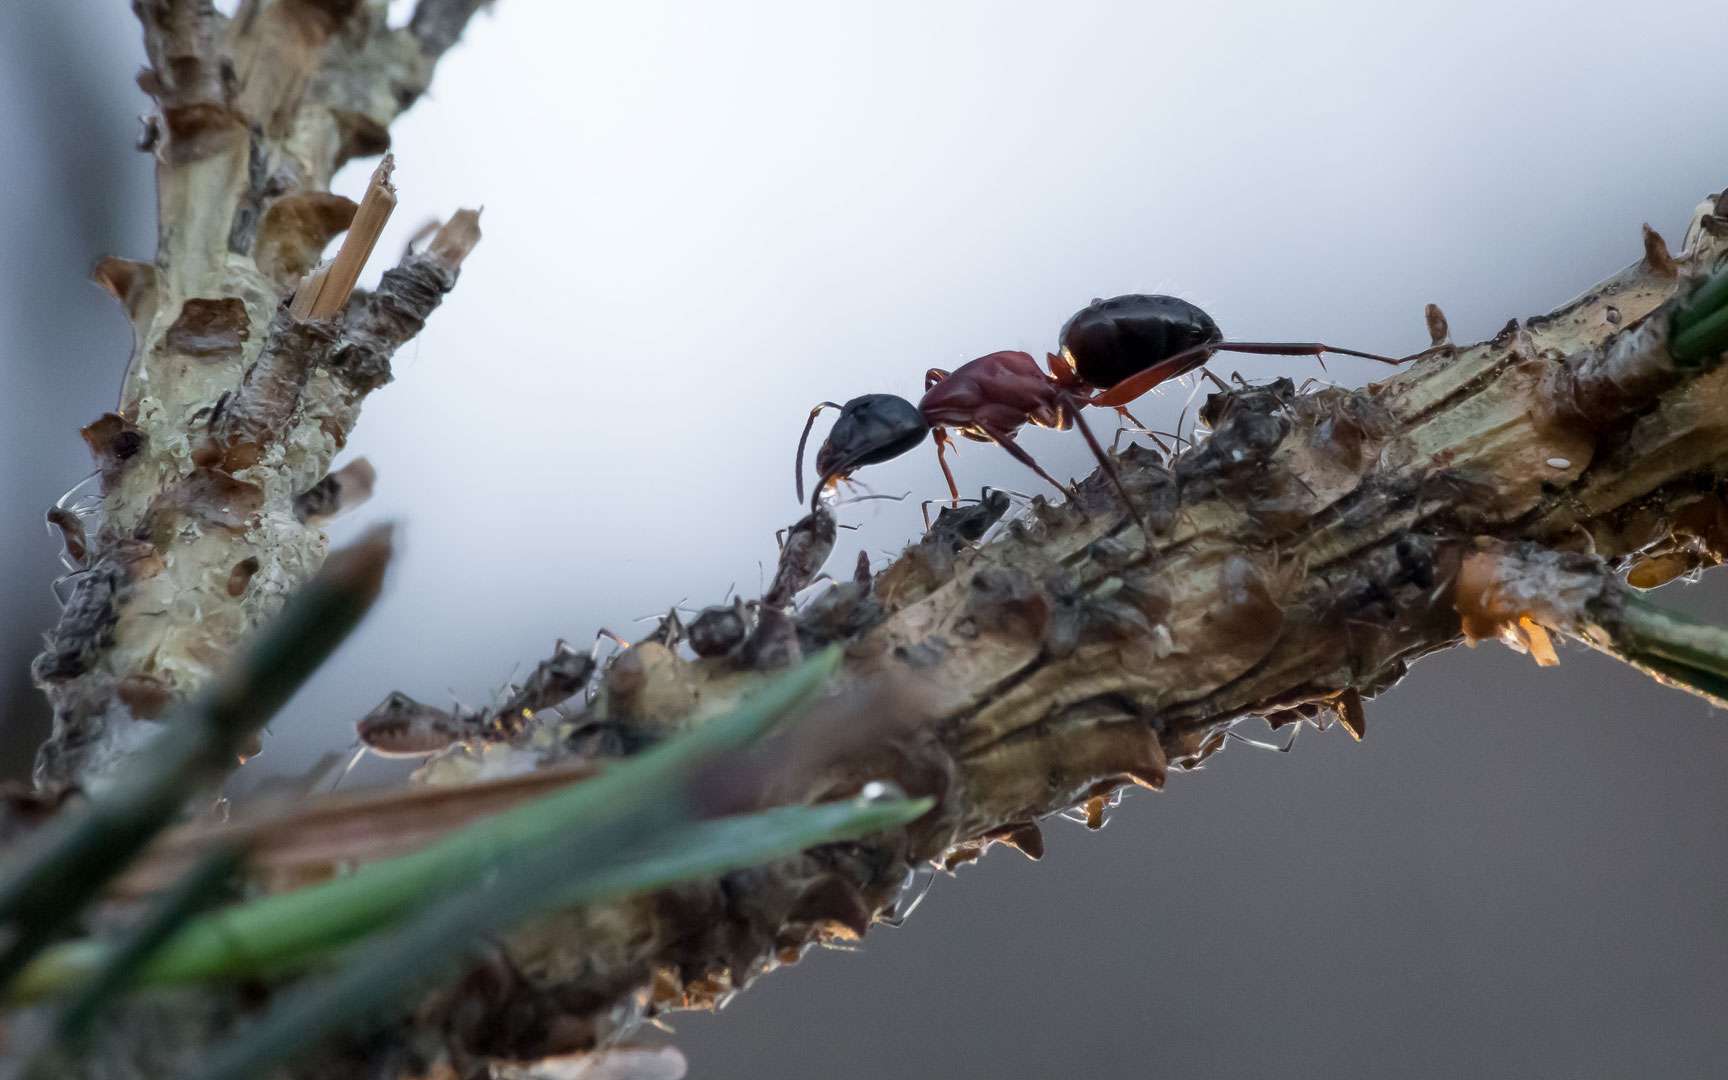 La fourmi parasitée il y a environ 50 millions d'années, semble être une fourmi du genre Camponotus, appelée aussi fourmi charpentière. © Hélène Rival, Wikimedia Commons, CC by-sa 4.0